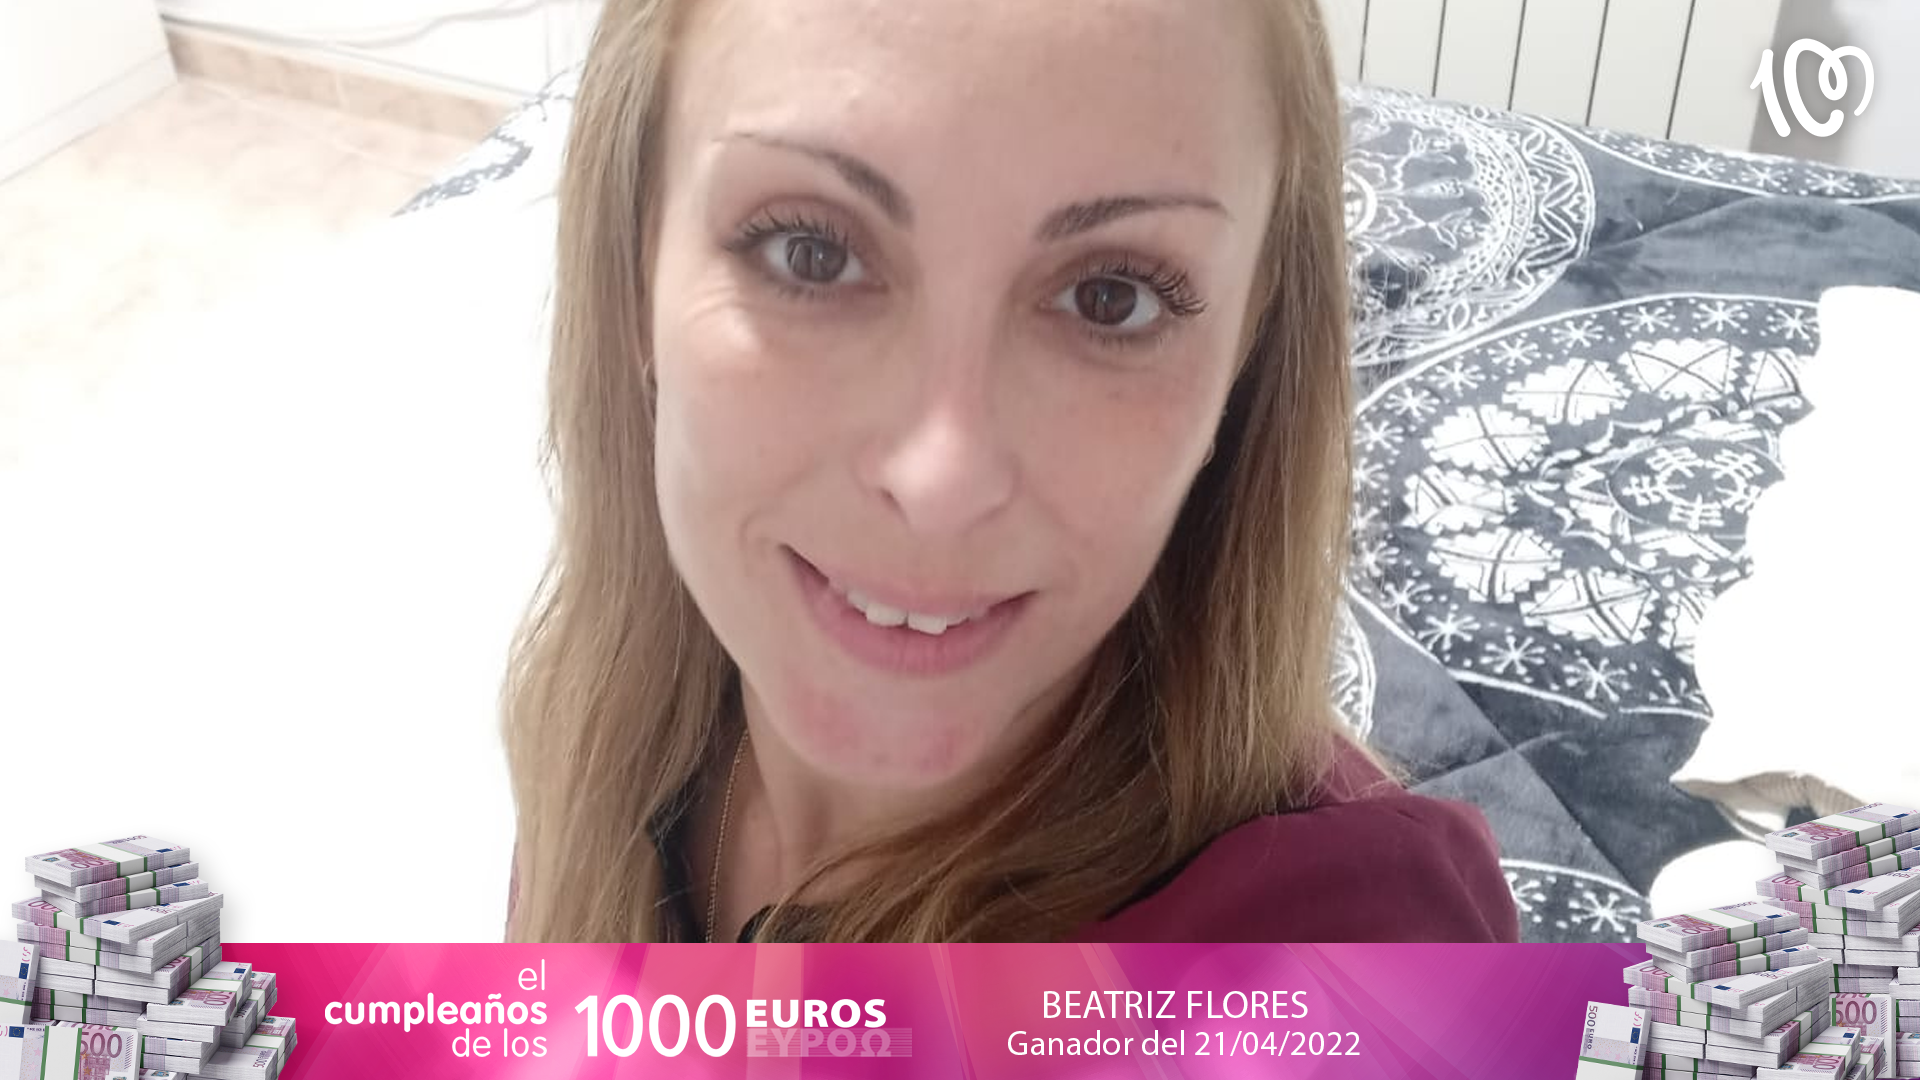 Beatriz ha ganado 1.000 euros en CADENA 100: "Tenía un presentimiento, ¡hoy era mi día!"